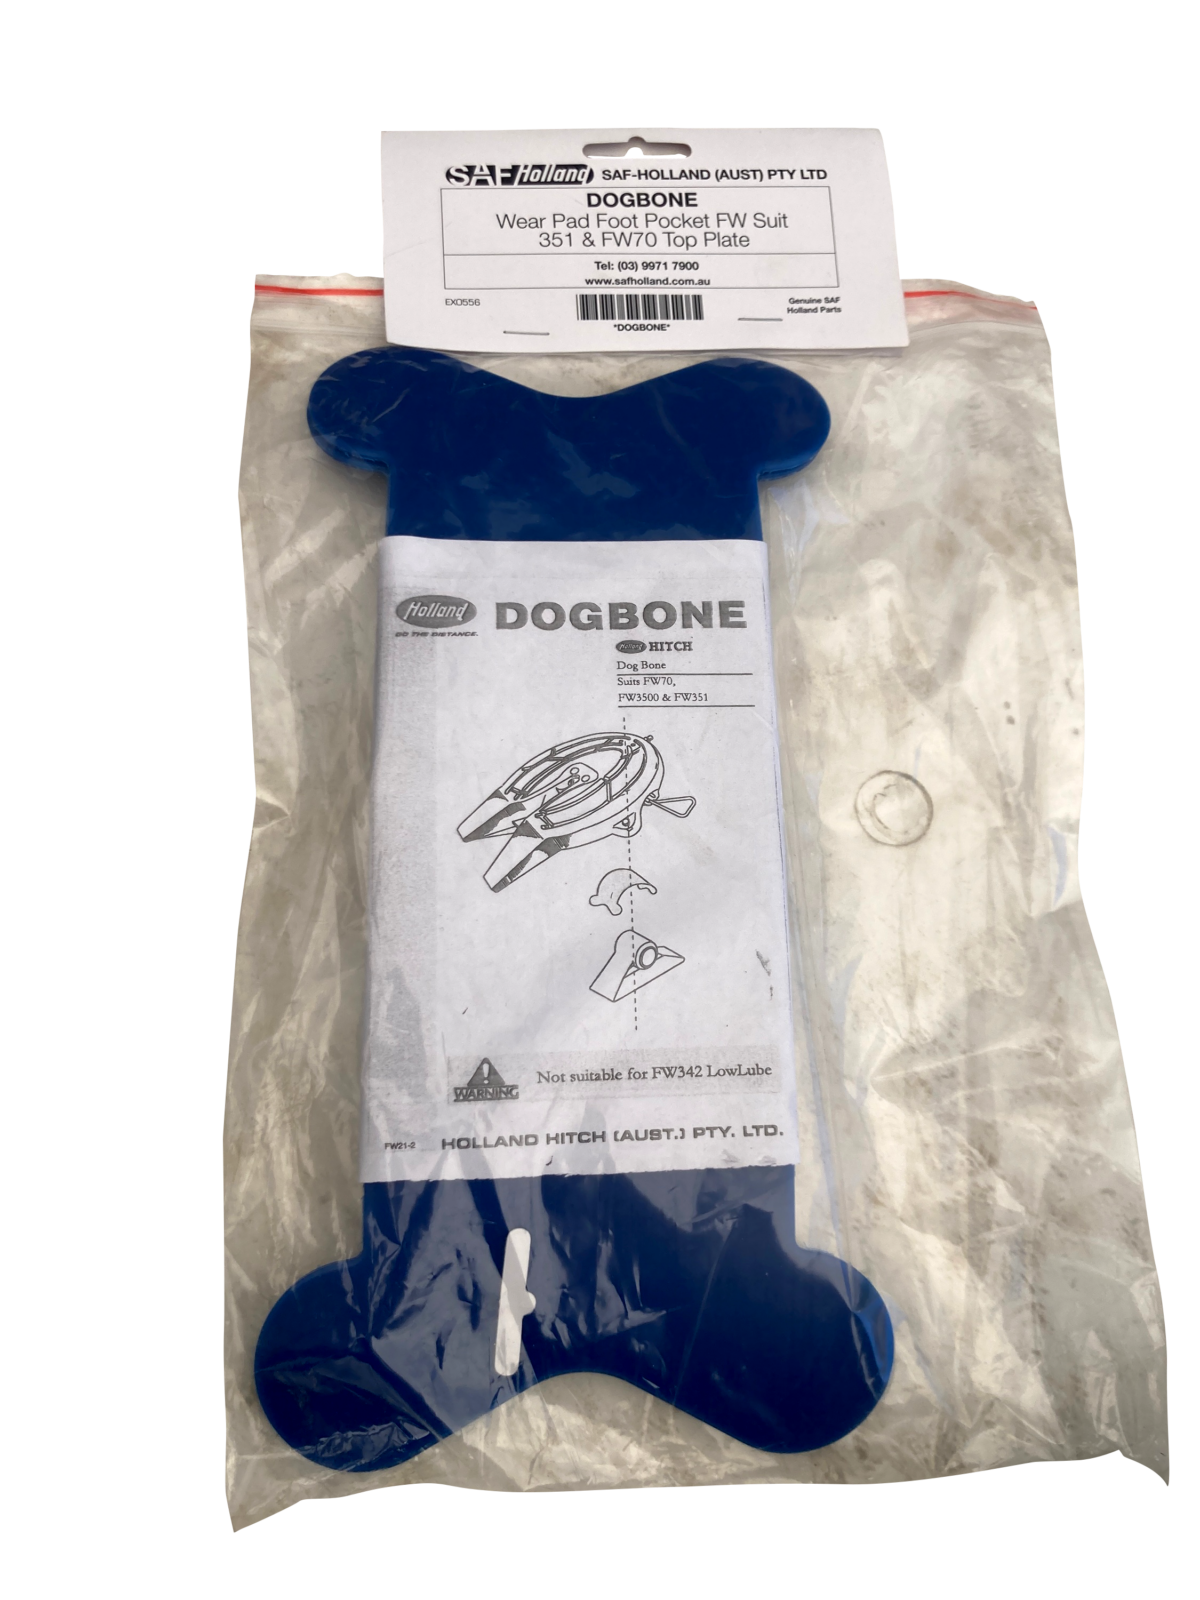 Dogbone wear pad - dogbone